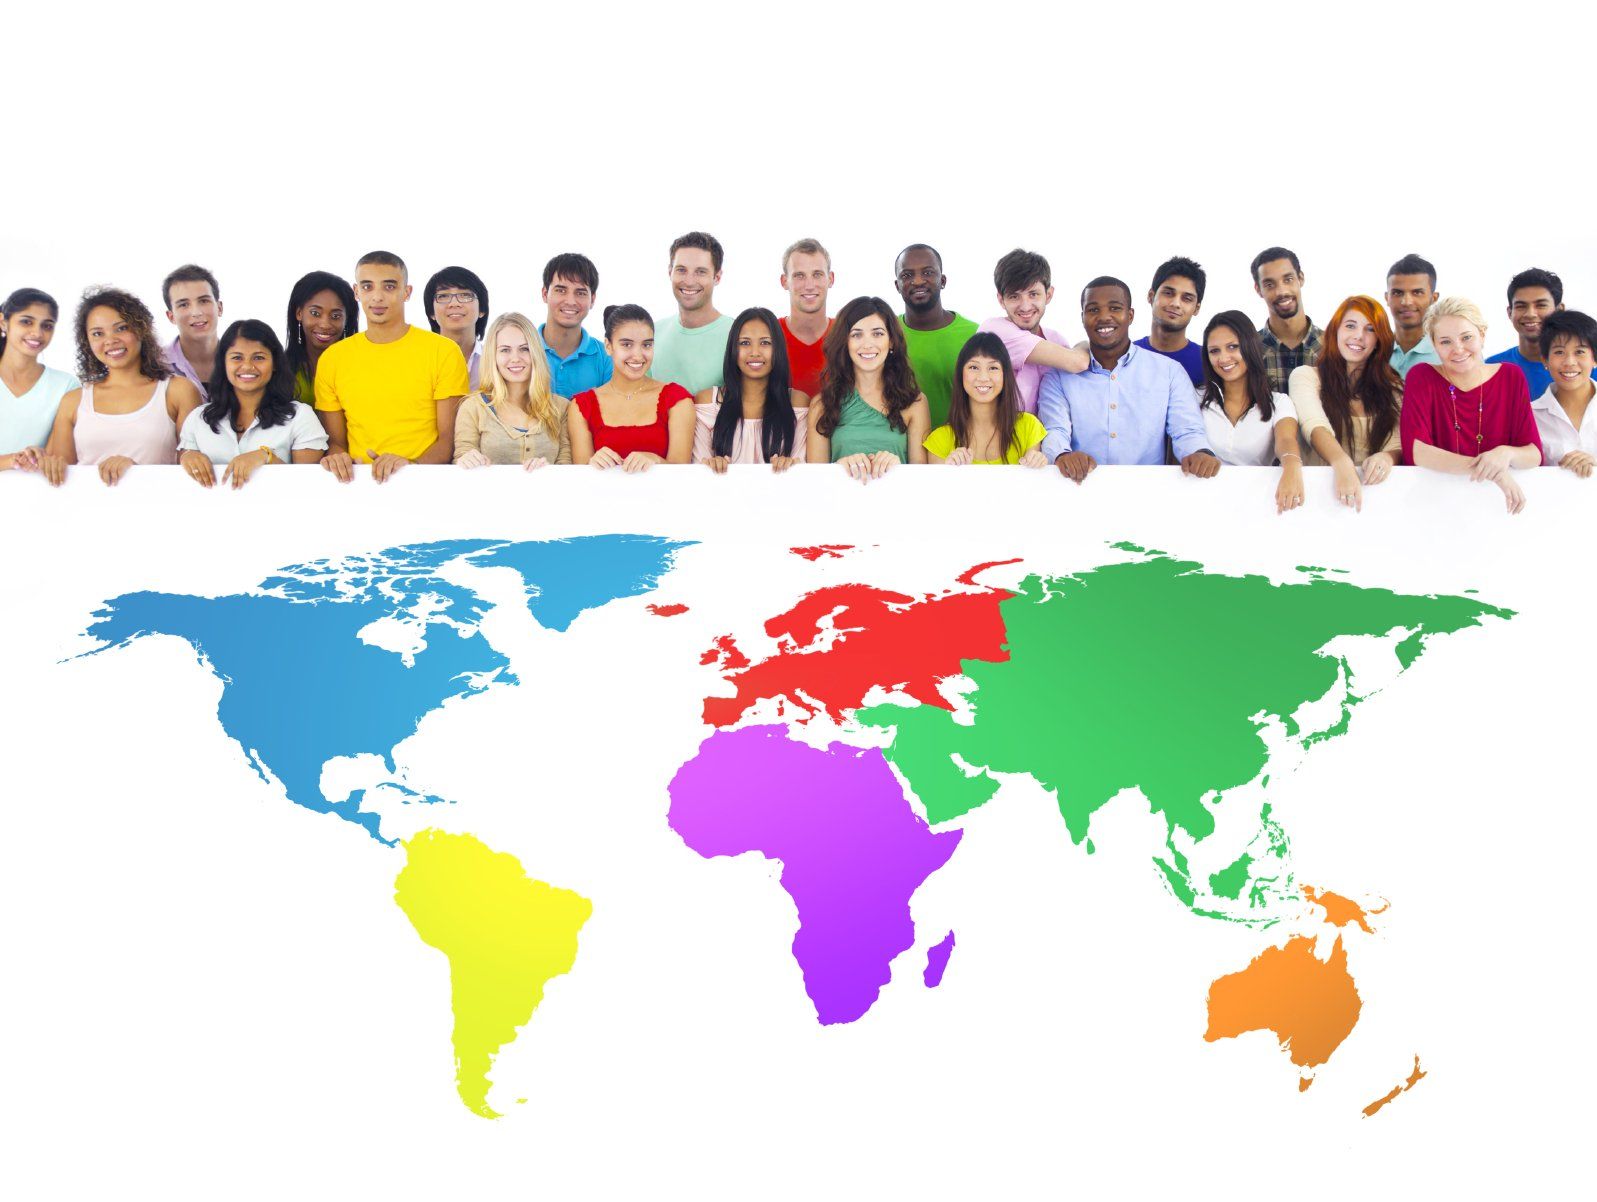 Diversity - viele bunte Menschen und eine Weltkarte